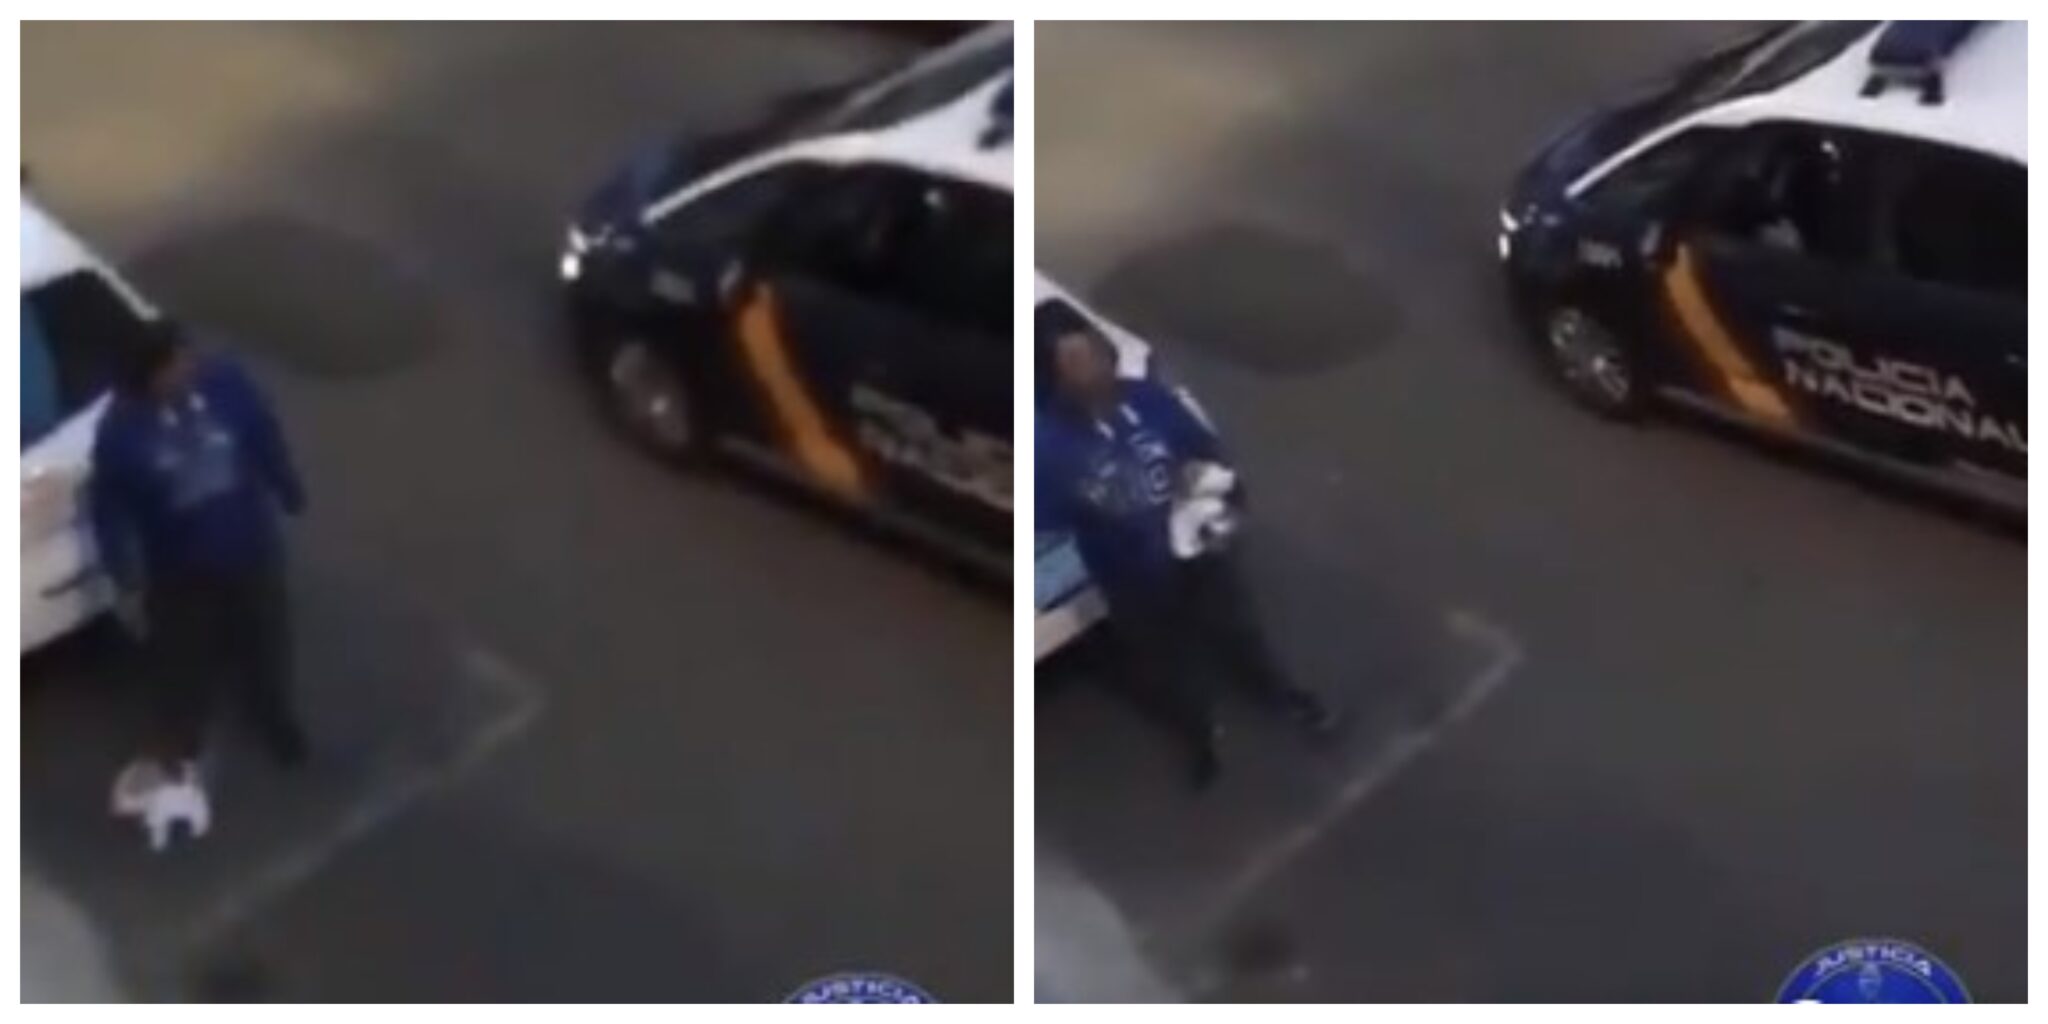 Passearcaopeluche Scaled Vídeo: Homem É Apanhado Pela Polícia Na Rua A Passear Cão De Peluche